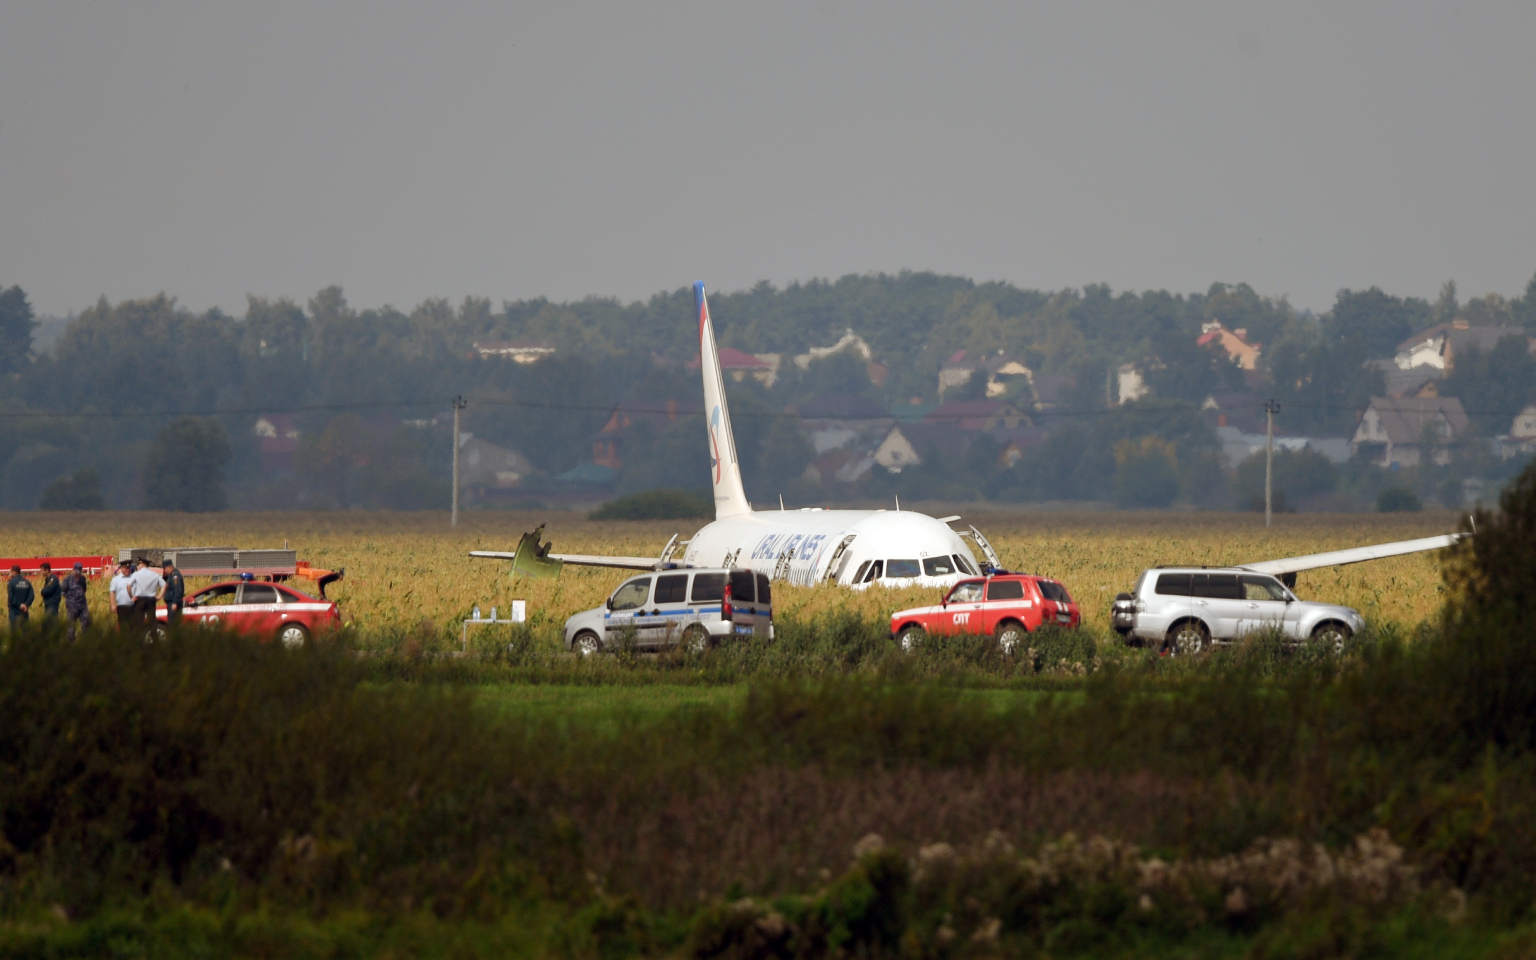 СМИ опубликовали расшифровку переговоров пилотов севшего в поле А321